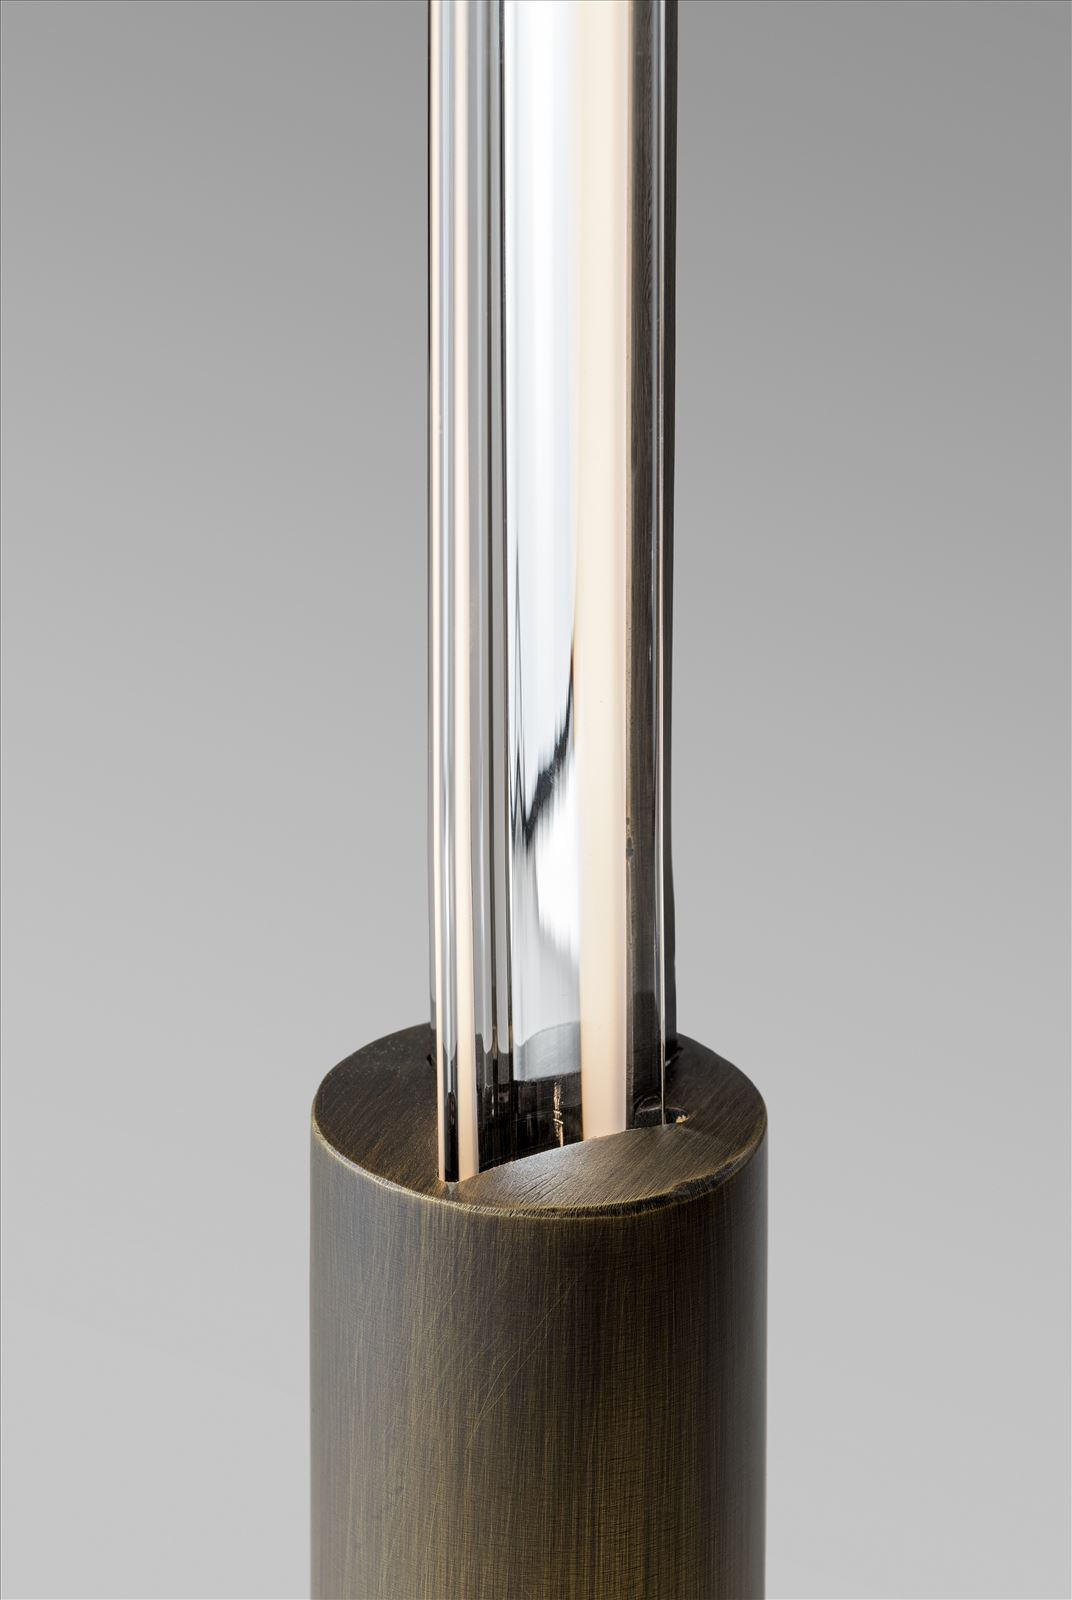 גופי תאורה בקטגוריית: מנורות עמידה  ,שם המוצר:  KRYPTOLITE